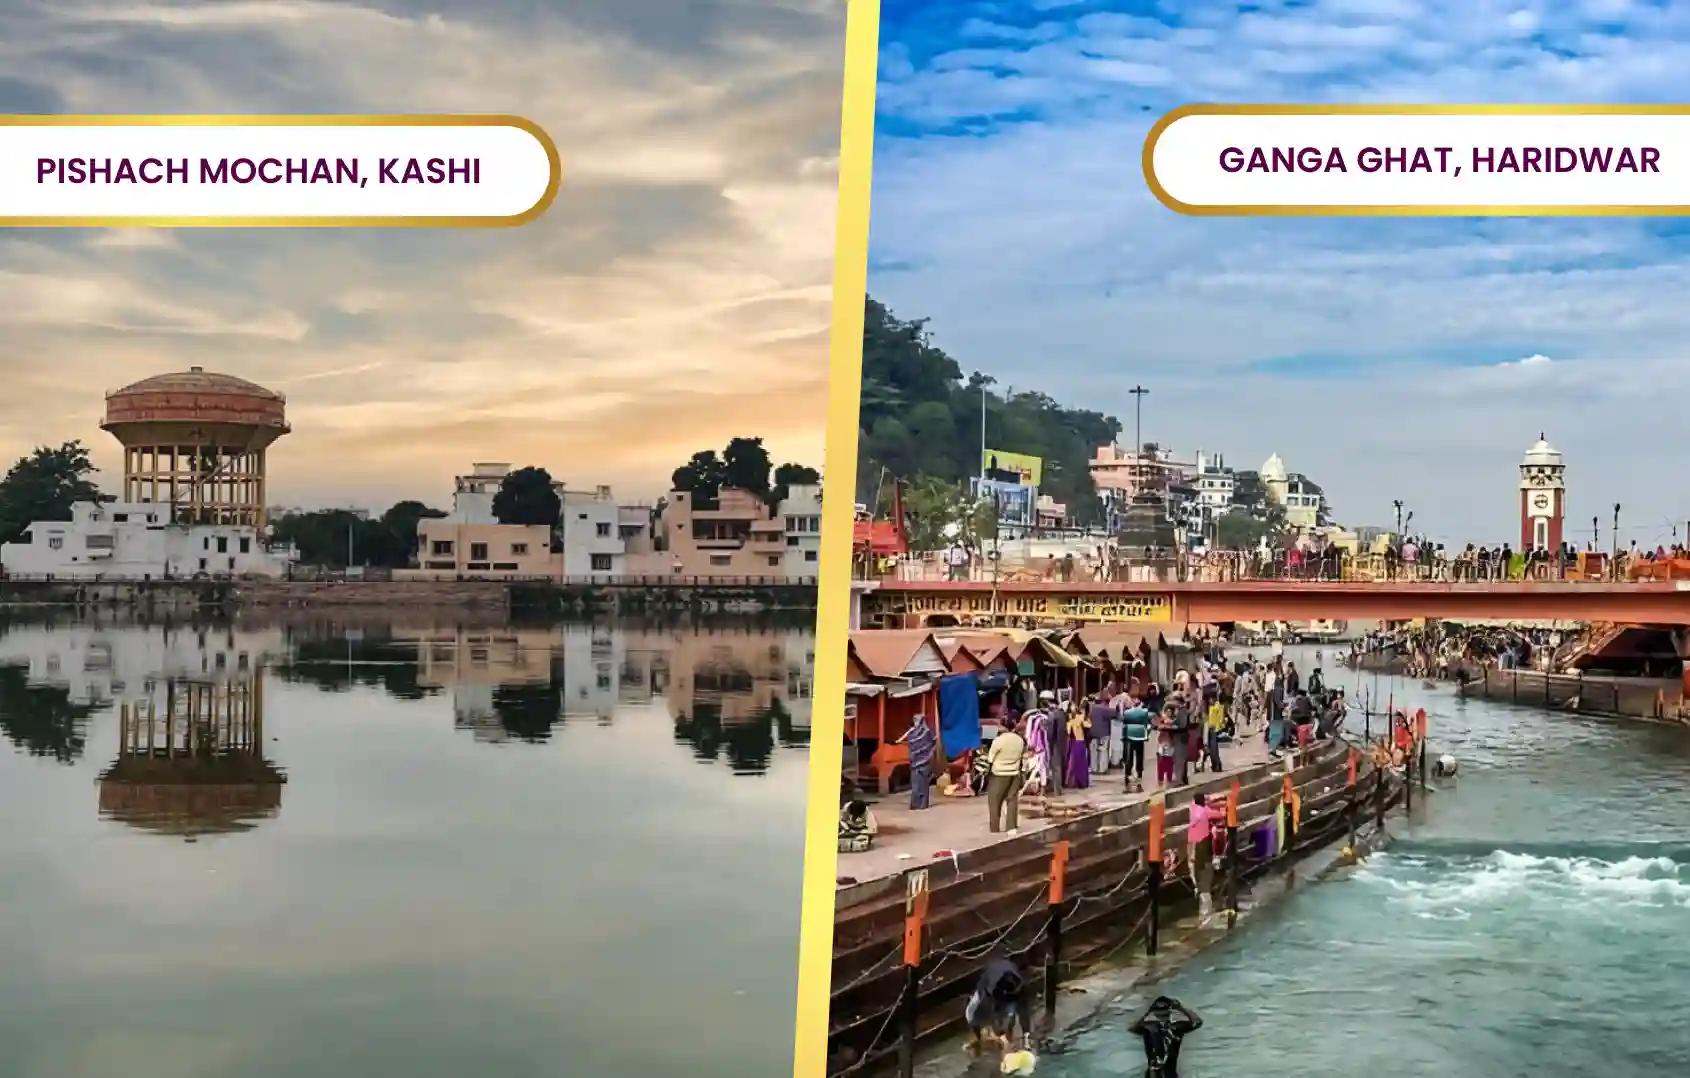 Pishach Mochan Kund and Ganga Ghat, Kashi, Haridwar